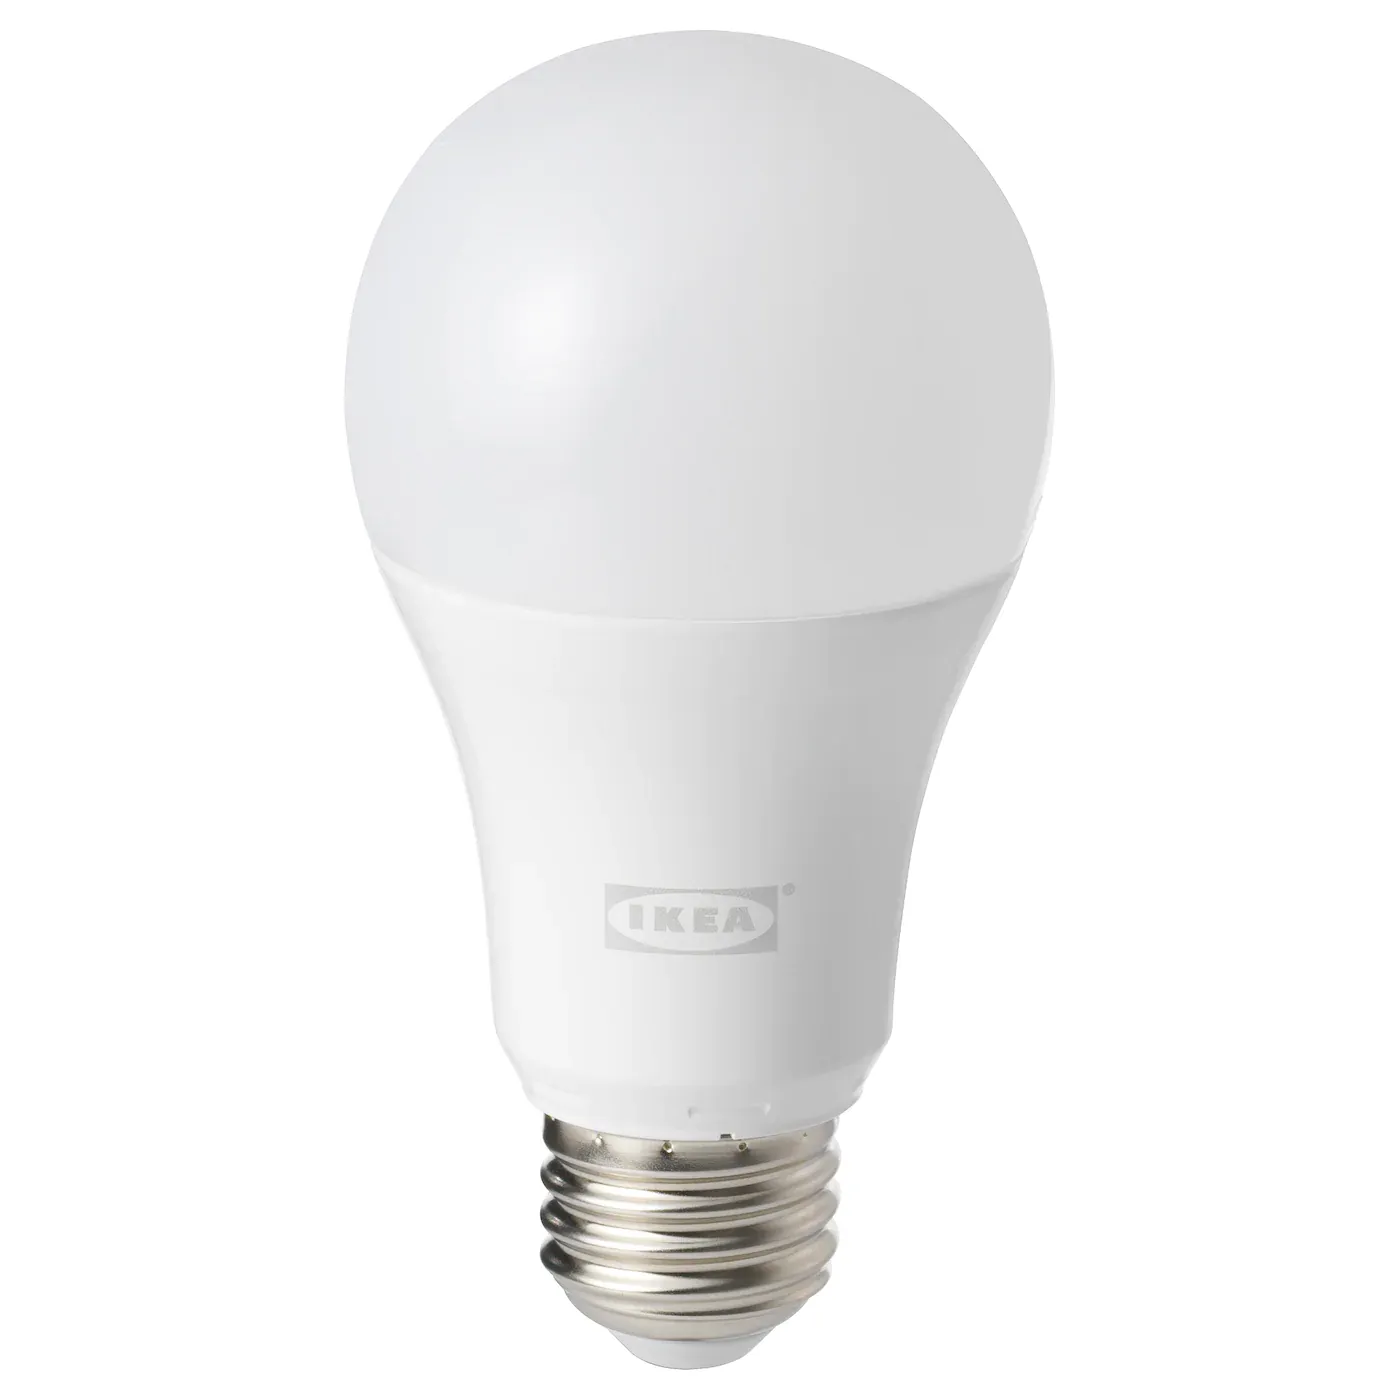 IKEA LED1732G11